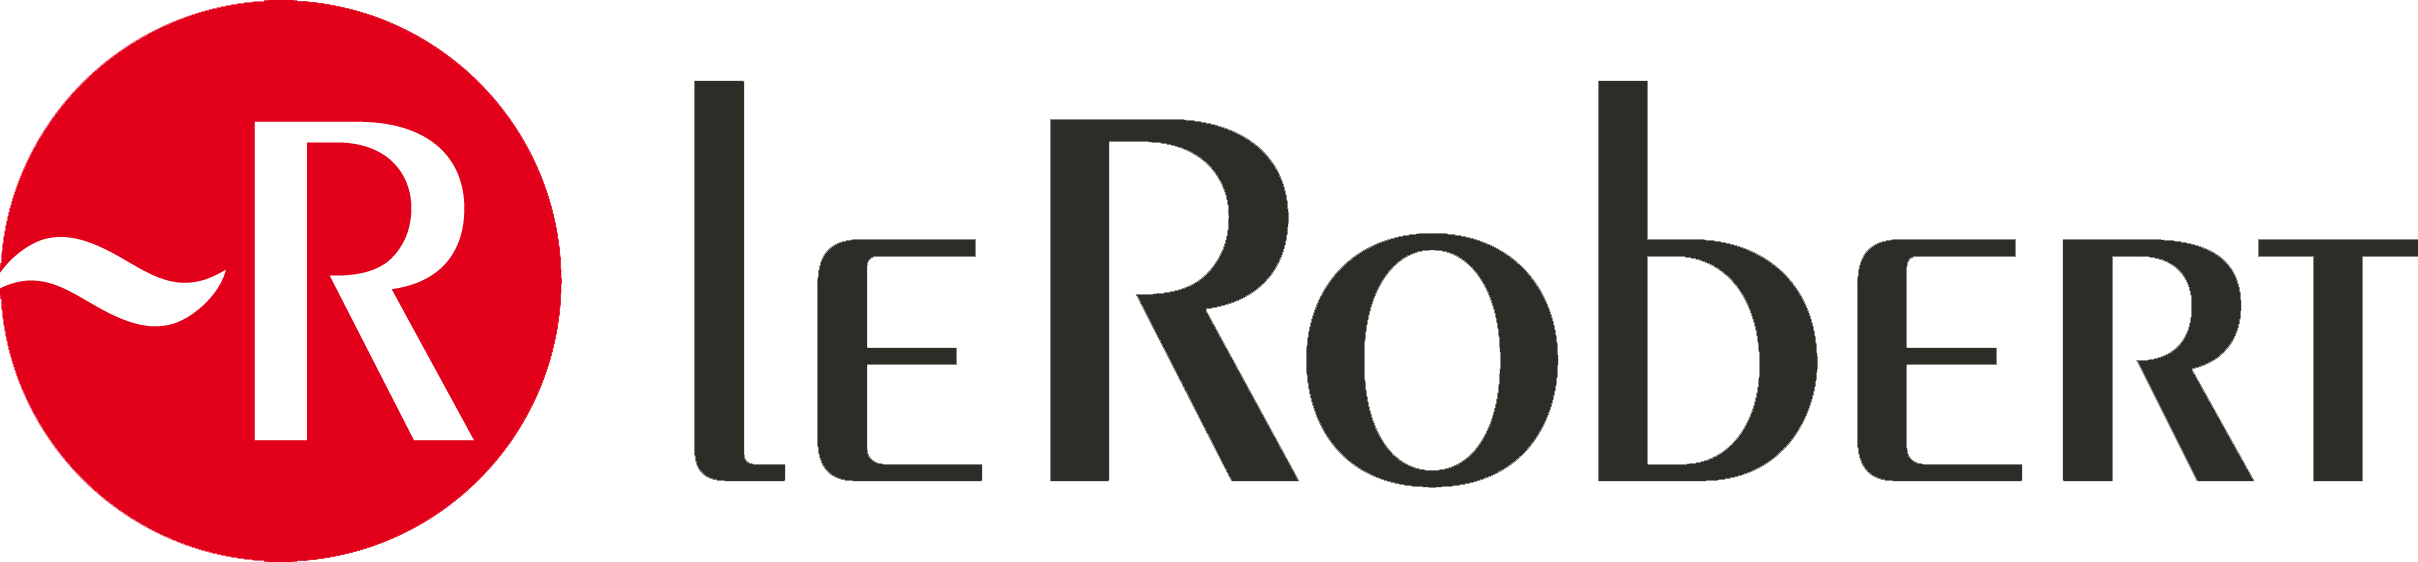 Logo Le Robert | Le Robert pour les professionnels